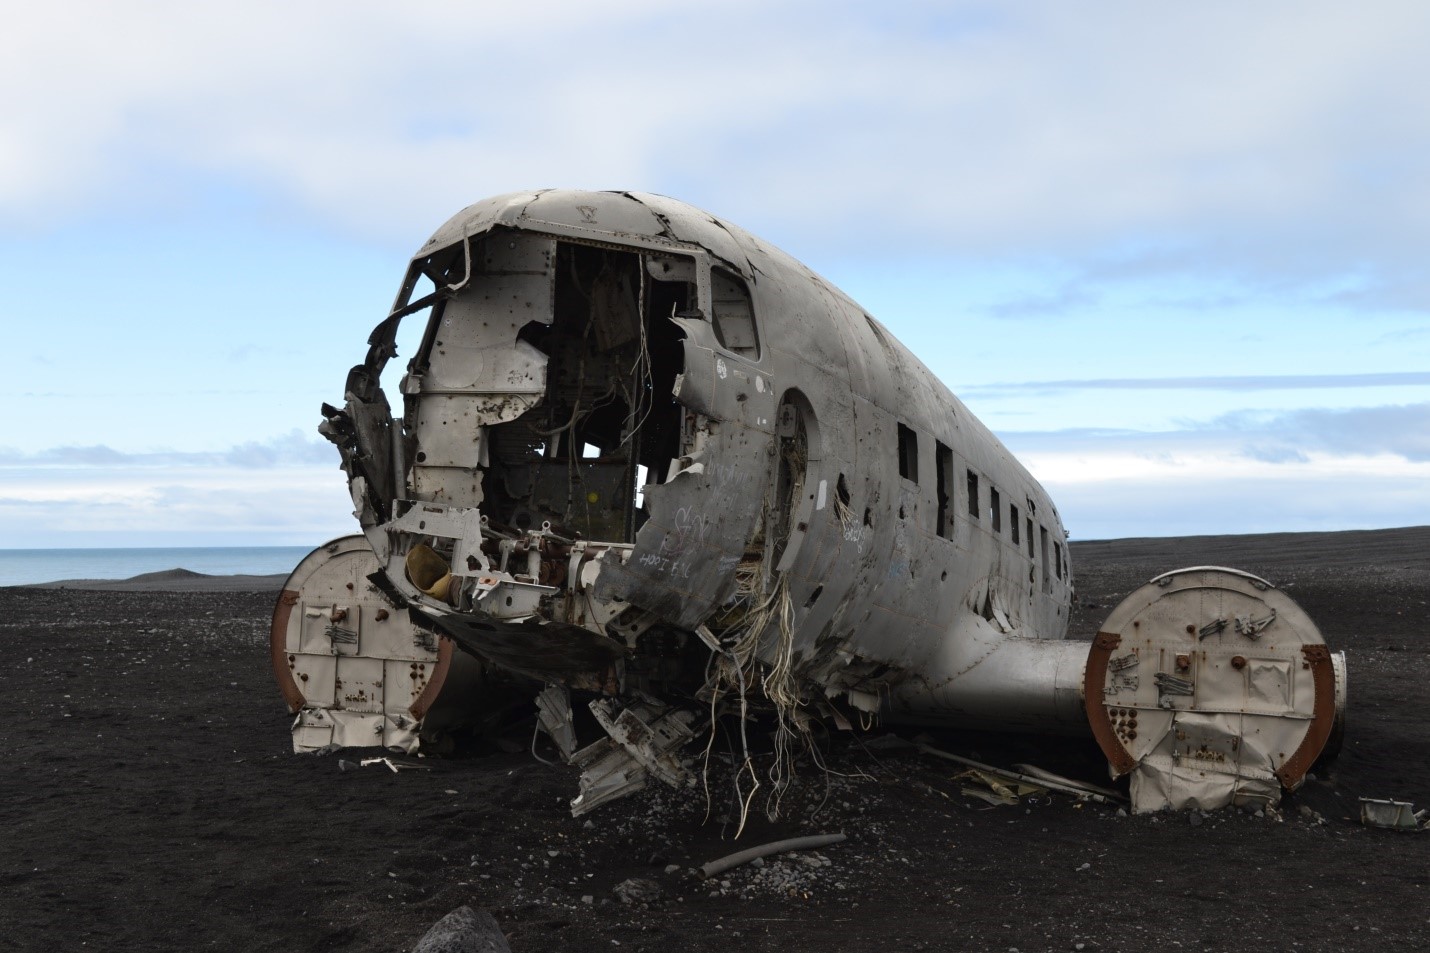 Bucket list day trips from Reykjavik - Sólheimasandur plane crash